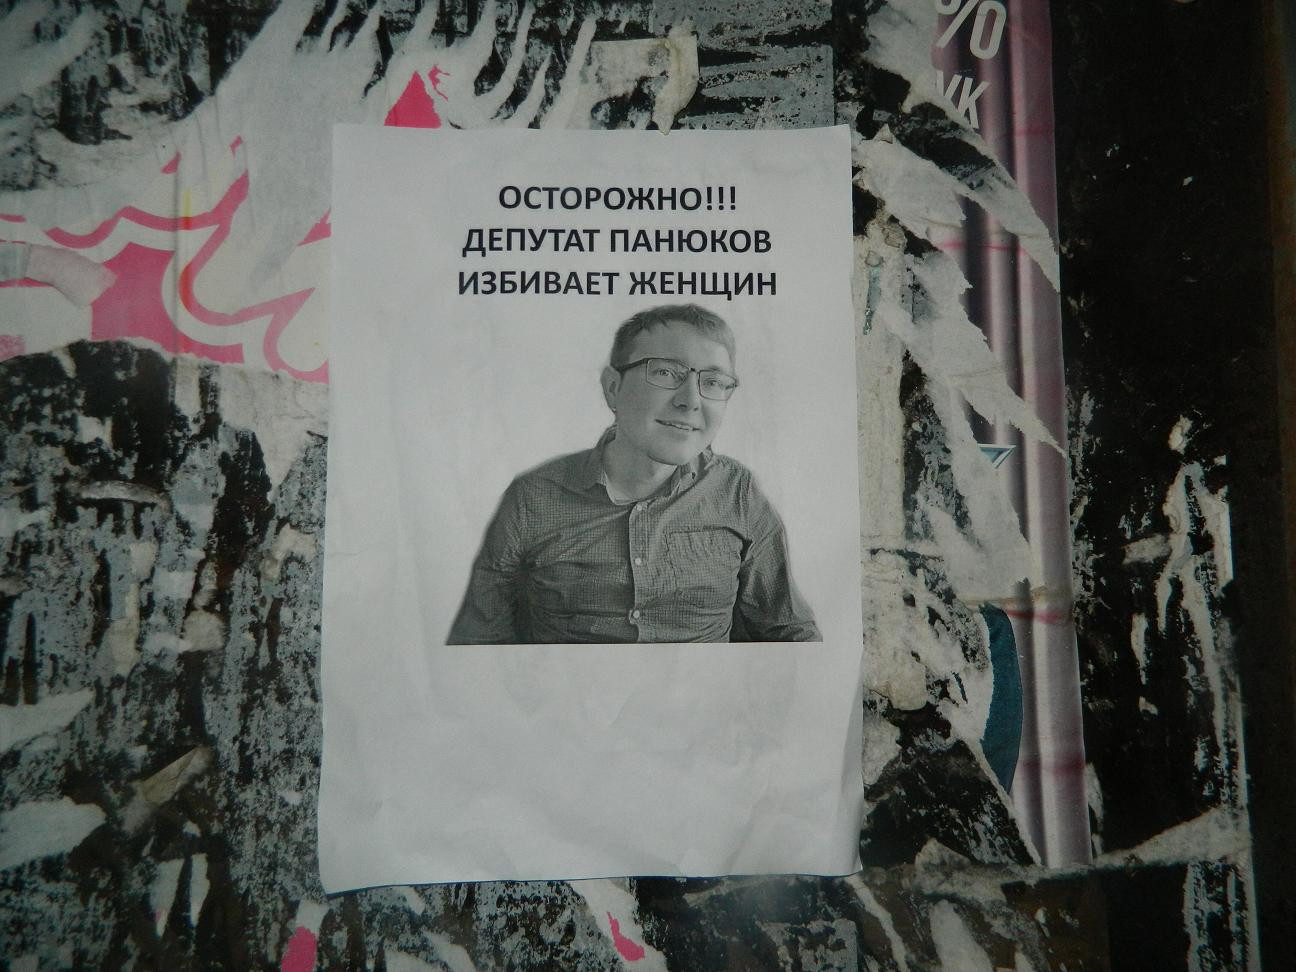 В полиции Сыктывкара рассказали подробности конфликта депутата и «циркачей»